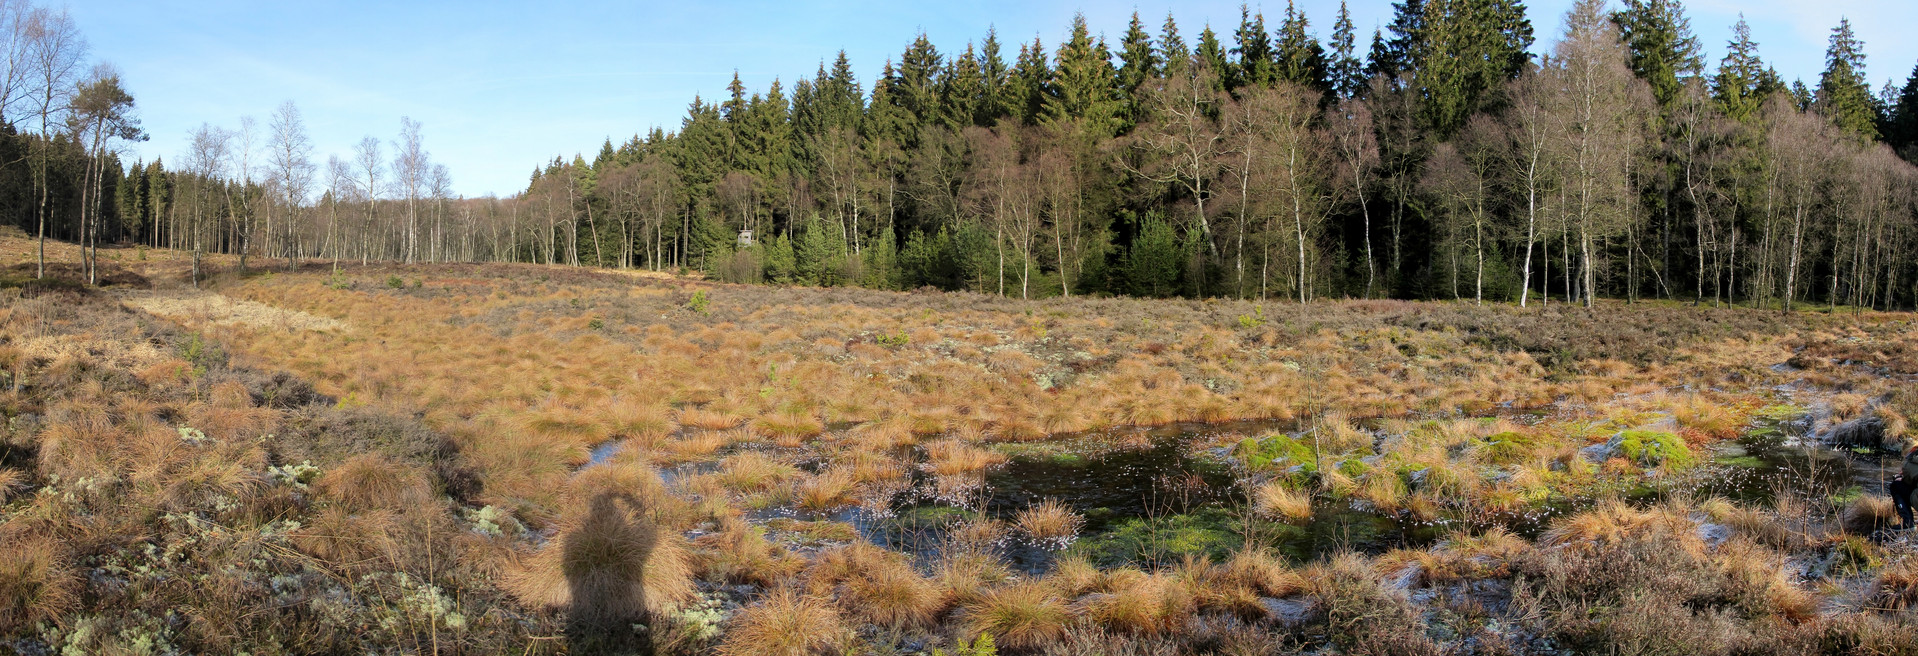 Das Bild zeigt ein Hochmoor im Naturschutzgebiet Truffvenn